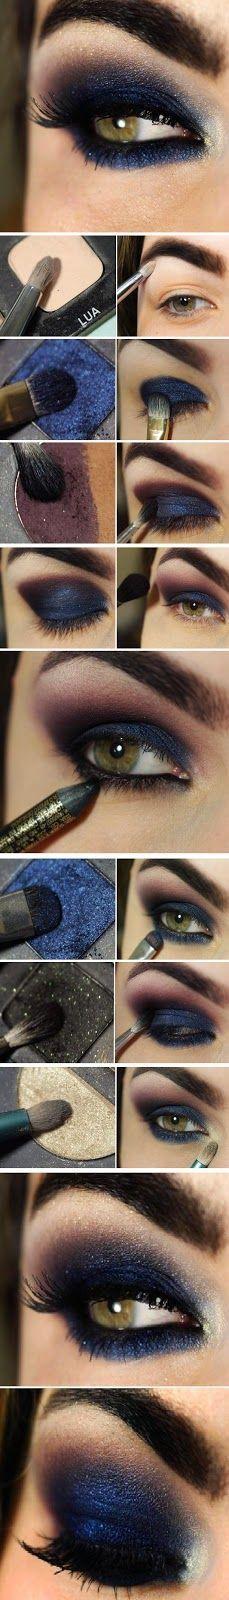 Wedding - DIY Navy Blue Eye Makeup Makeup Eye Shadow How To Diy Makeup Eye Makeup Eye Liner Makeup Tutorials Eye Makeup Tutorials